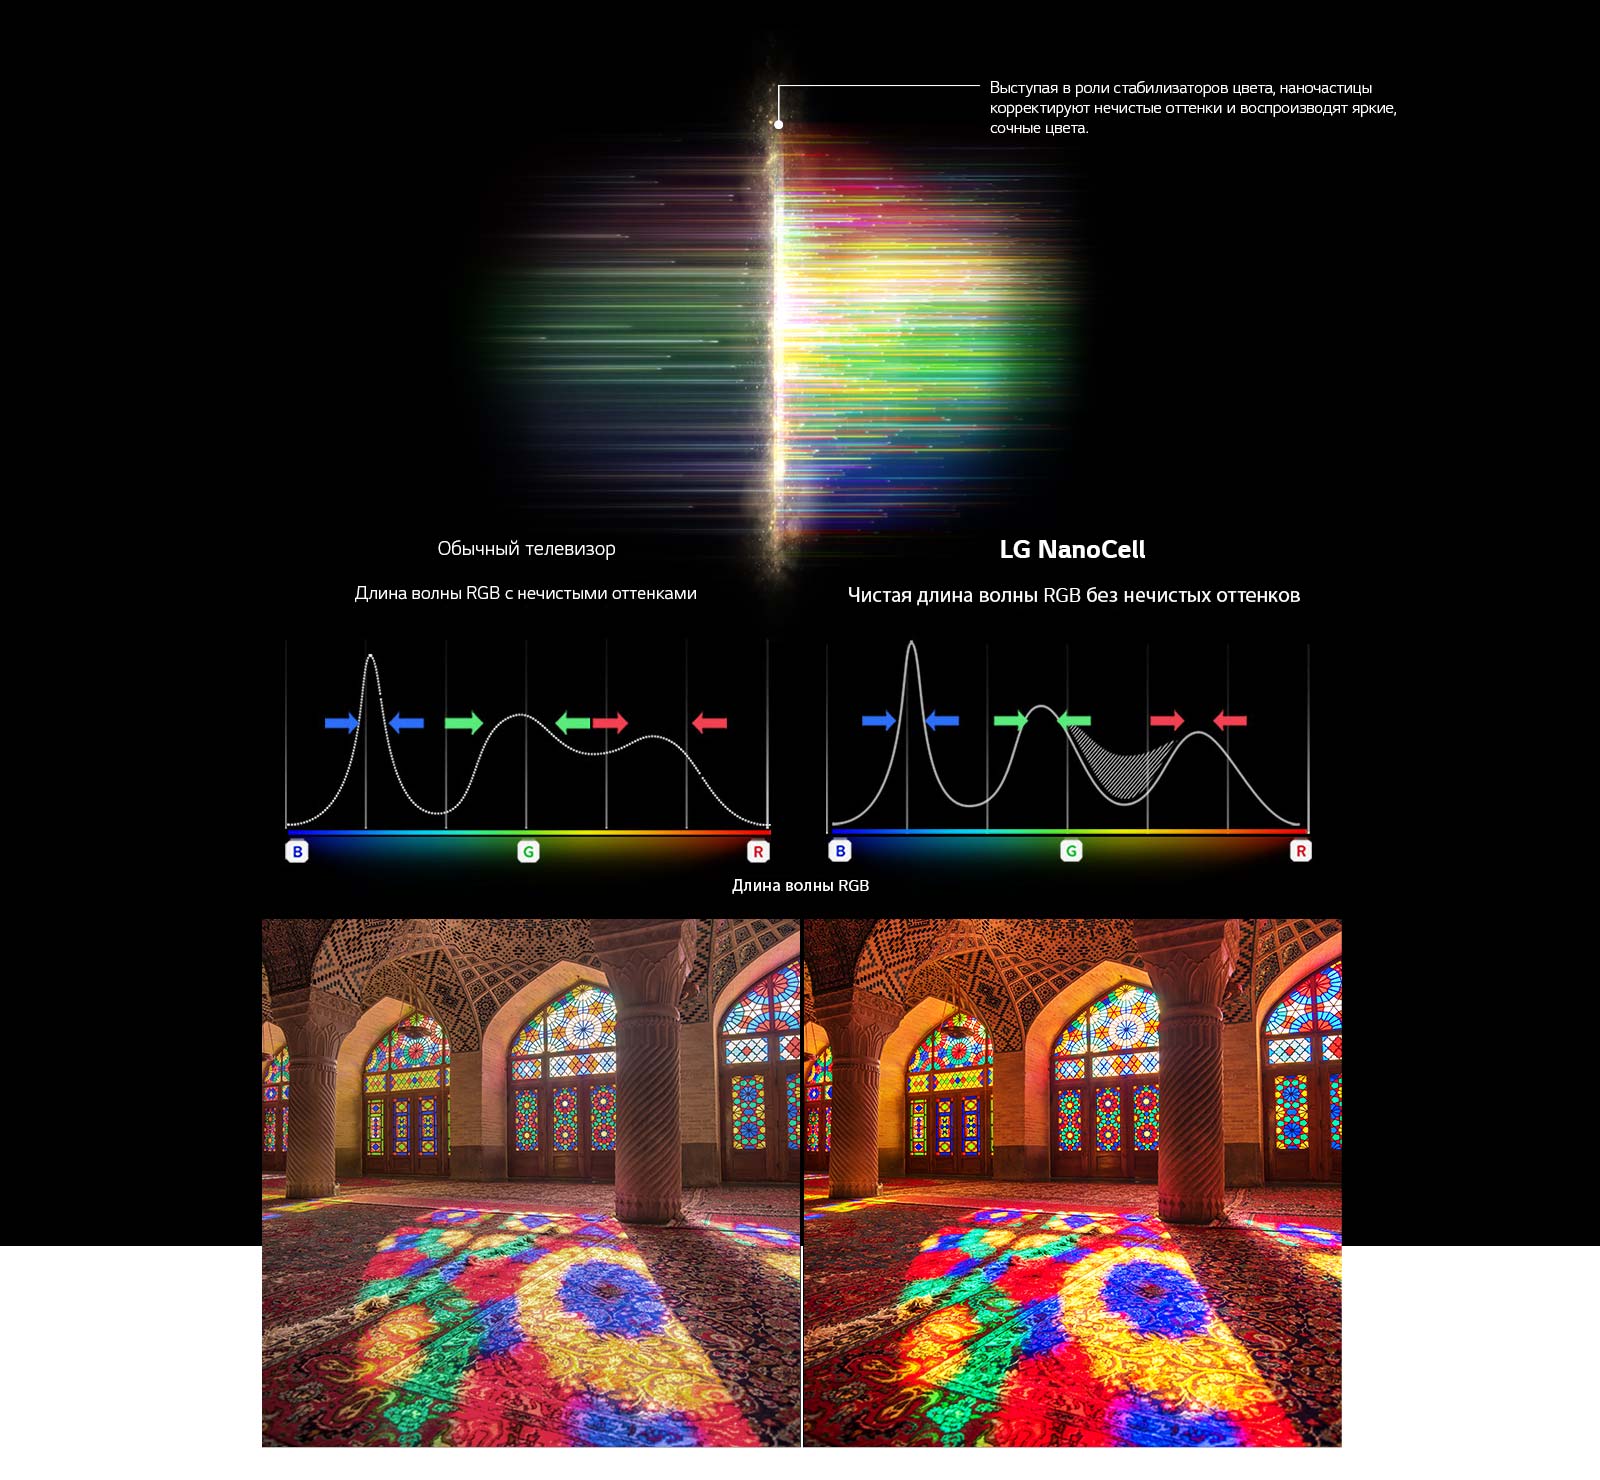 Диаграмма RGB-спектра, показывающая, как отфильтрованы тусклые цвета, и картинки, сравнивающие чистоту цвета между обычным телевизором и NanoCell Tech